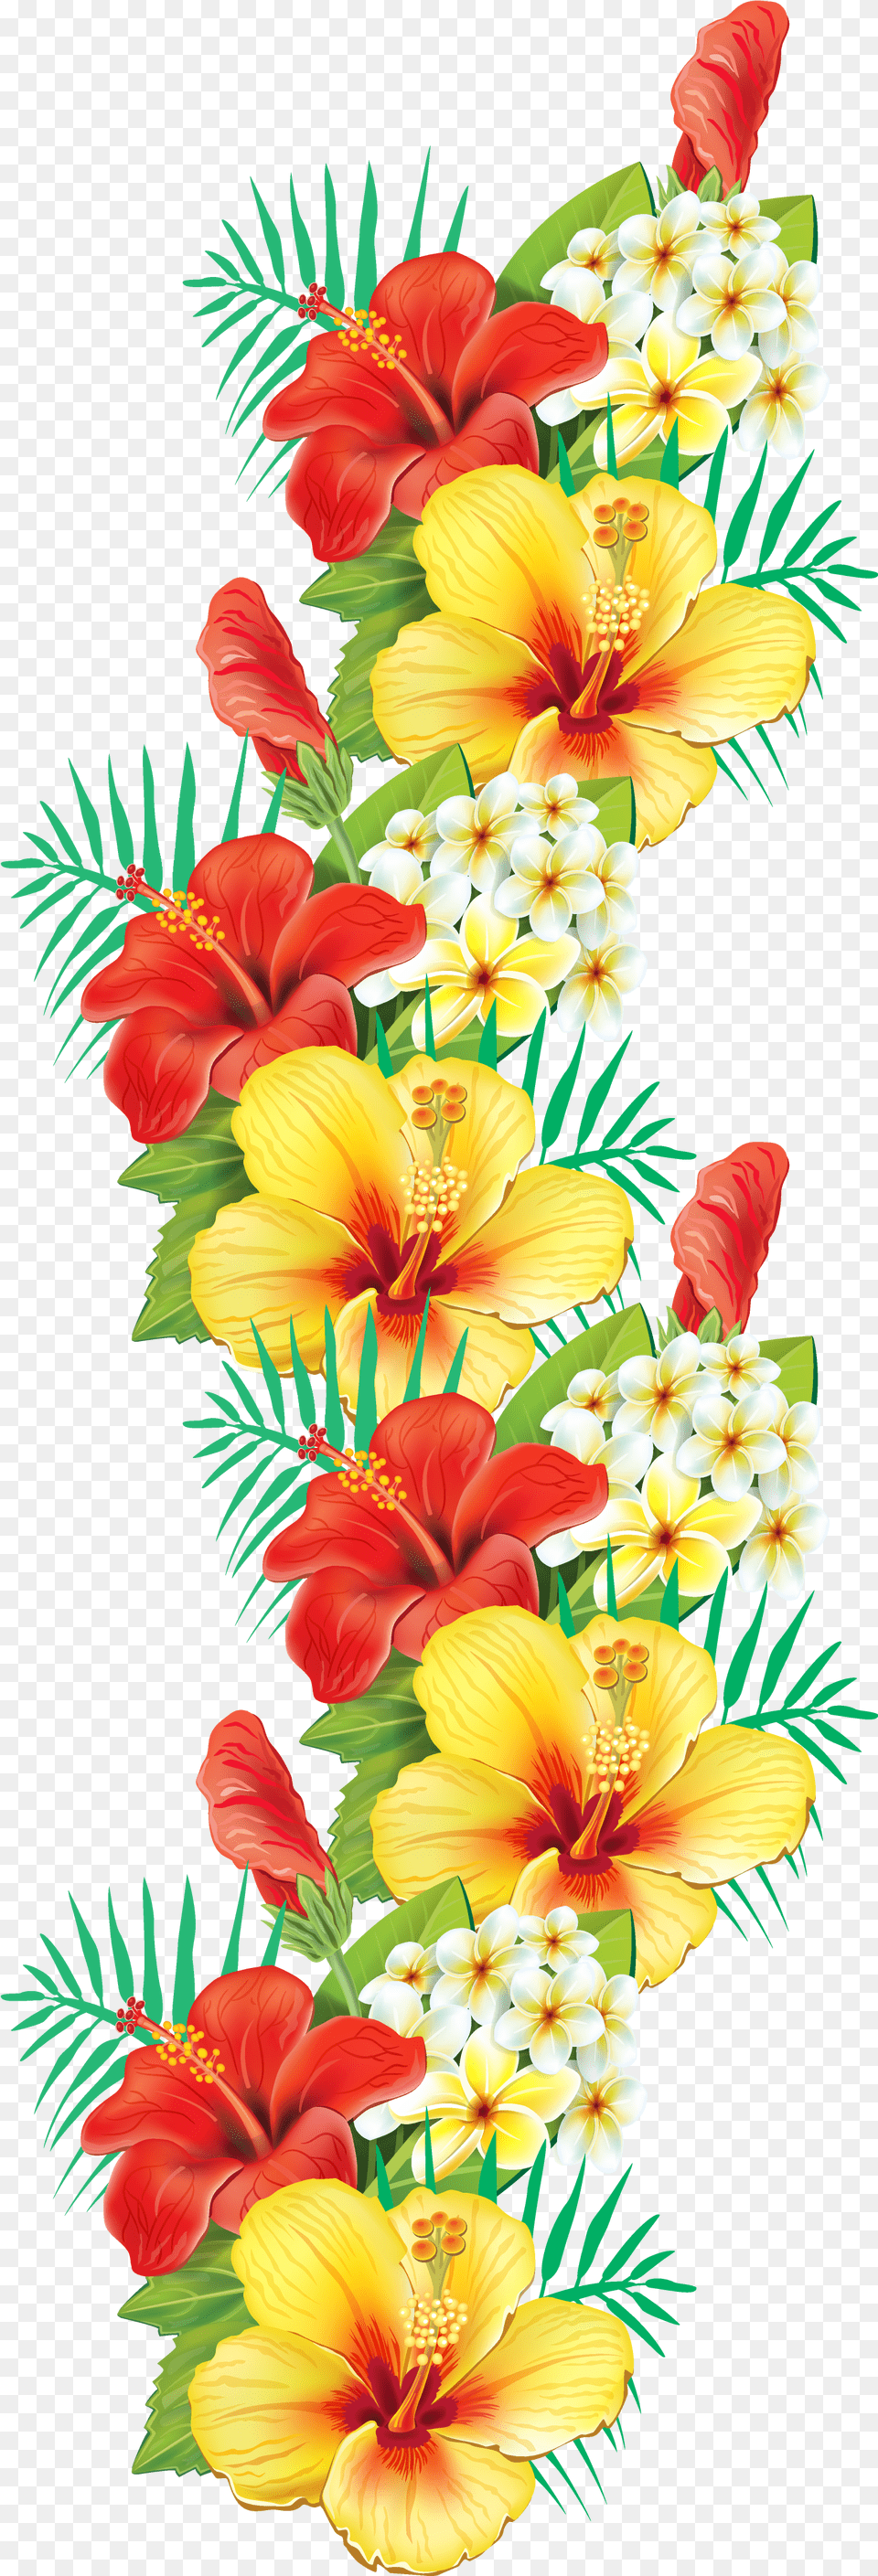 Exotic Flowers Decor Transparent Background Tropical Flowers, Flower, Flower Arrangement, Plant, Accessories Png Image